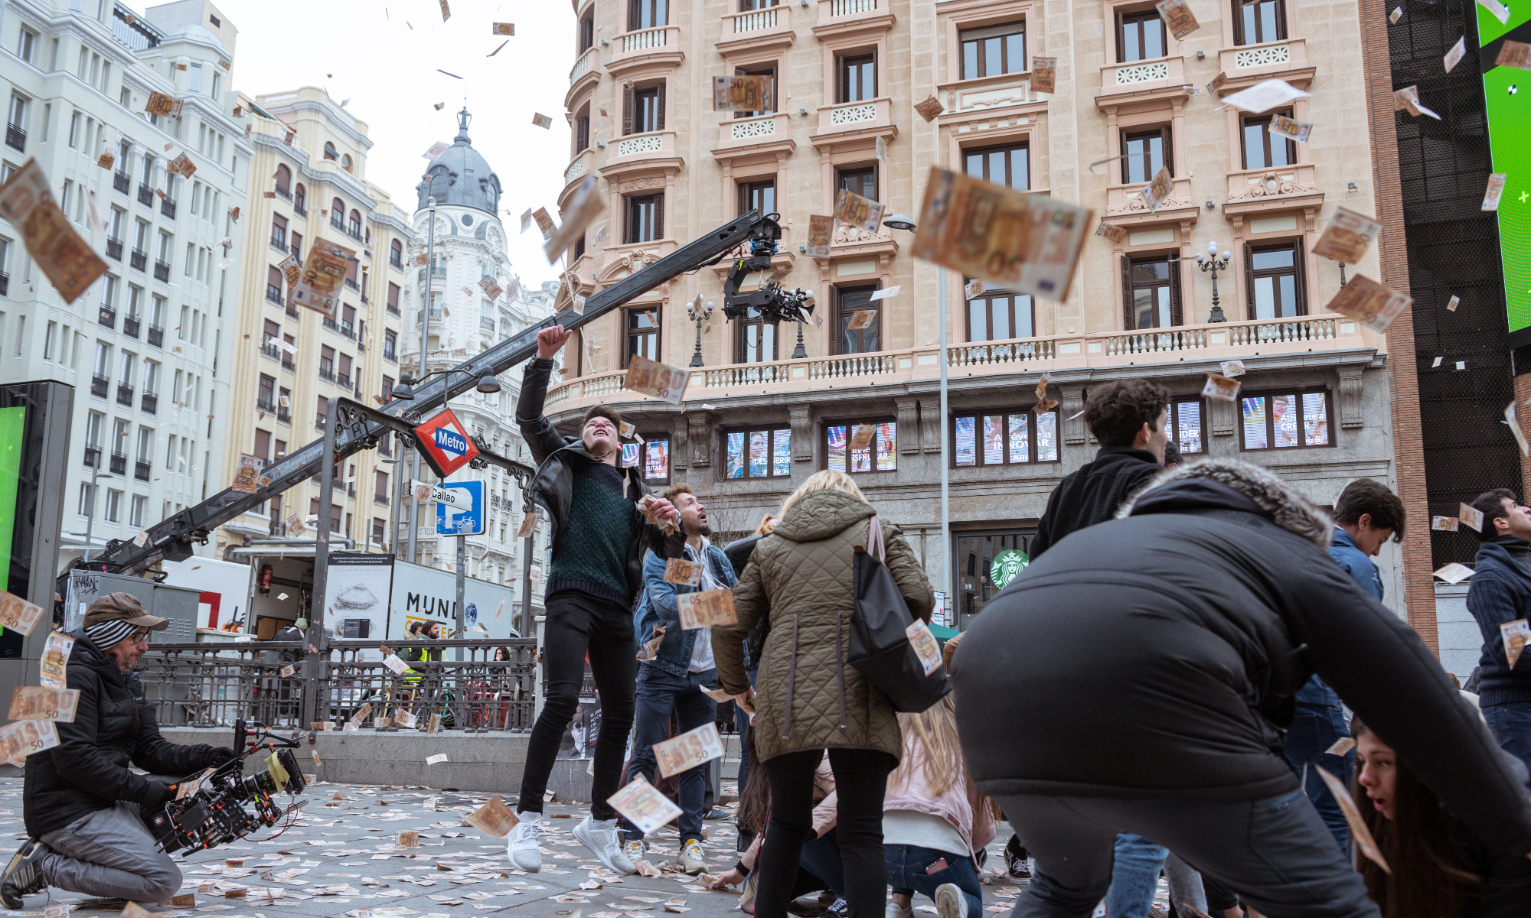 'Madrid en la pantalla', una iniciativa para descubrir la ciudad a través de sus películas y series (Ayuntamiento de Madrid)